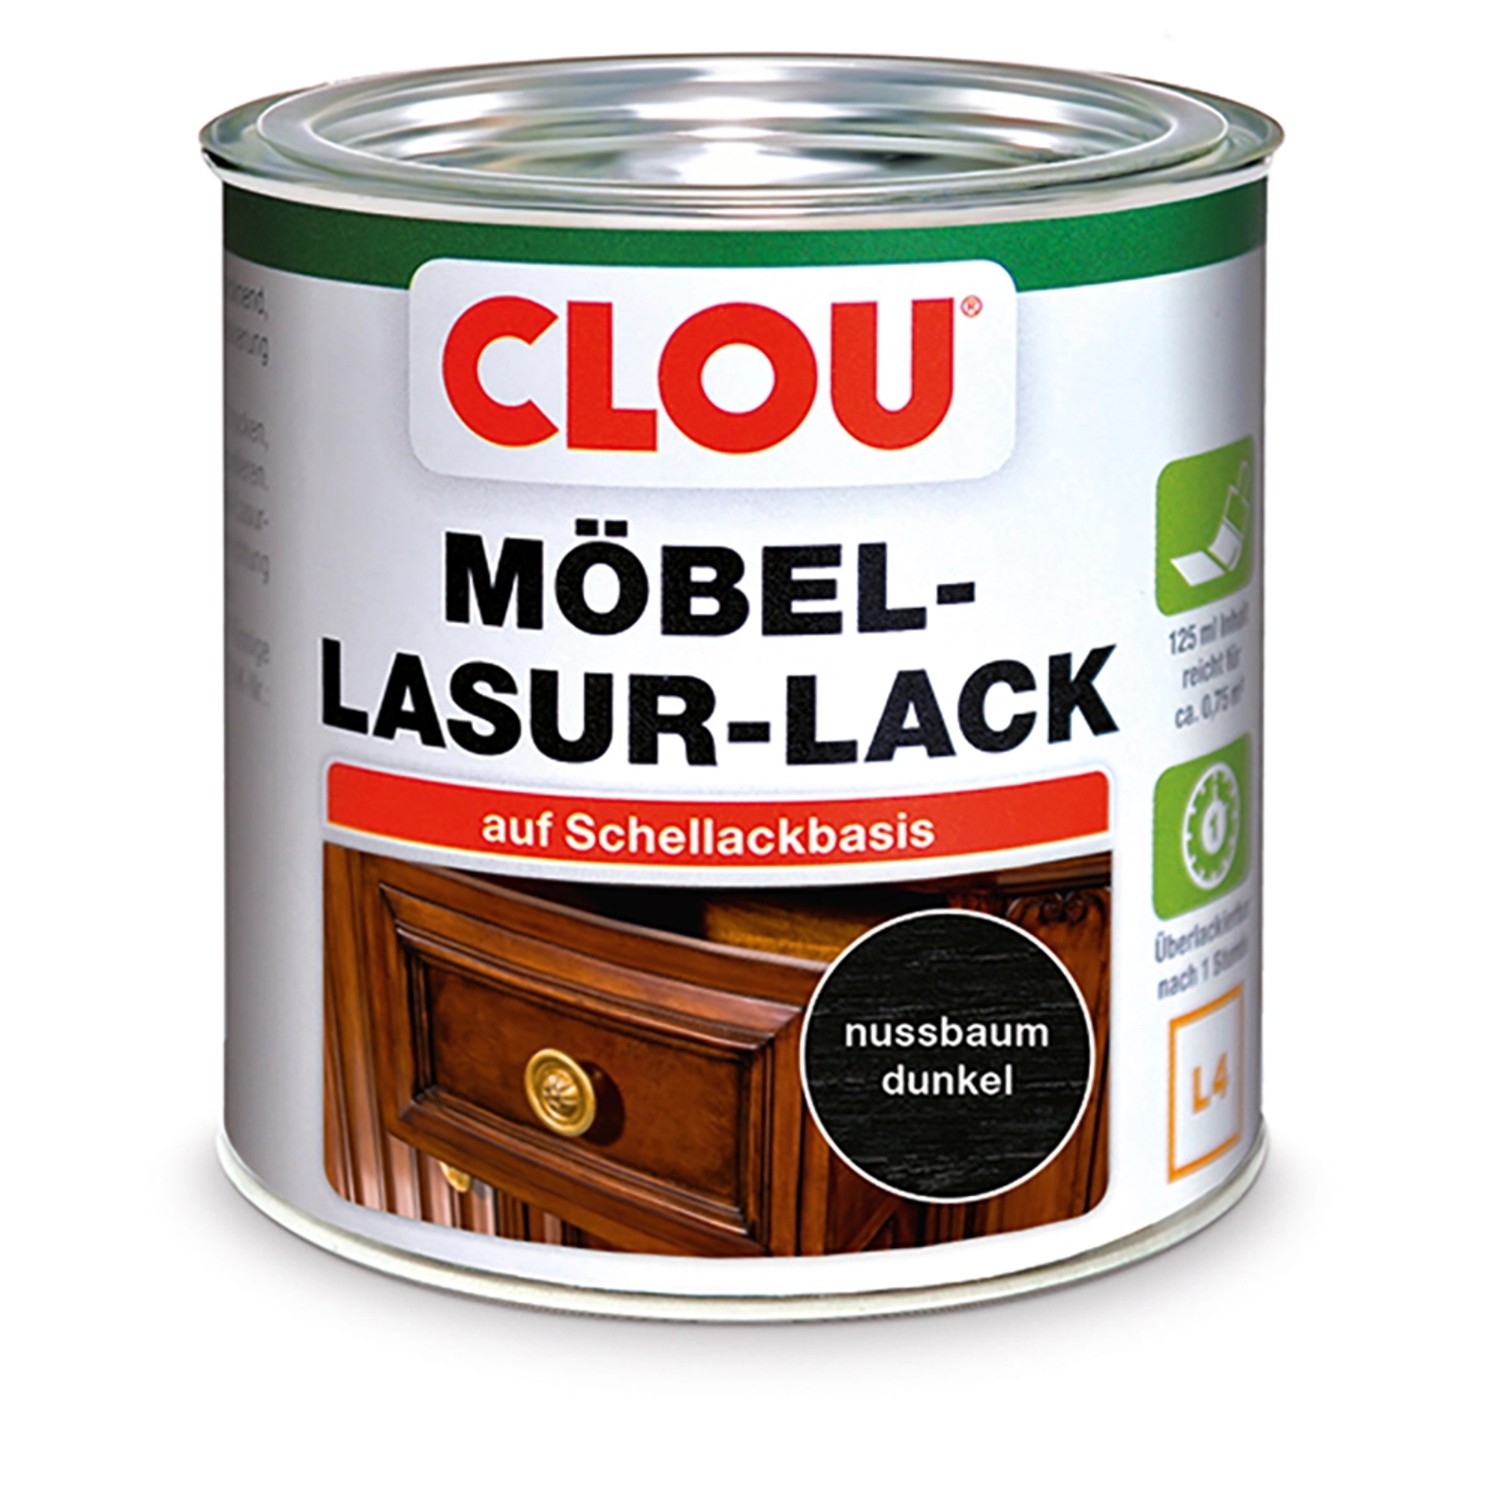 Clou Möbel-Lasur-Lack L4 Nussbaum dunkel 125 ml von CLOU